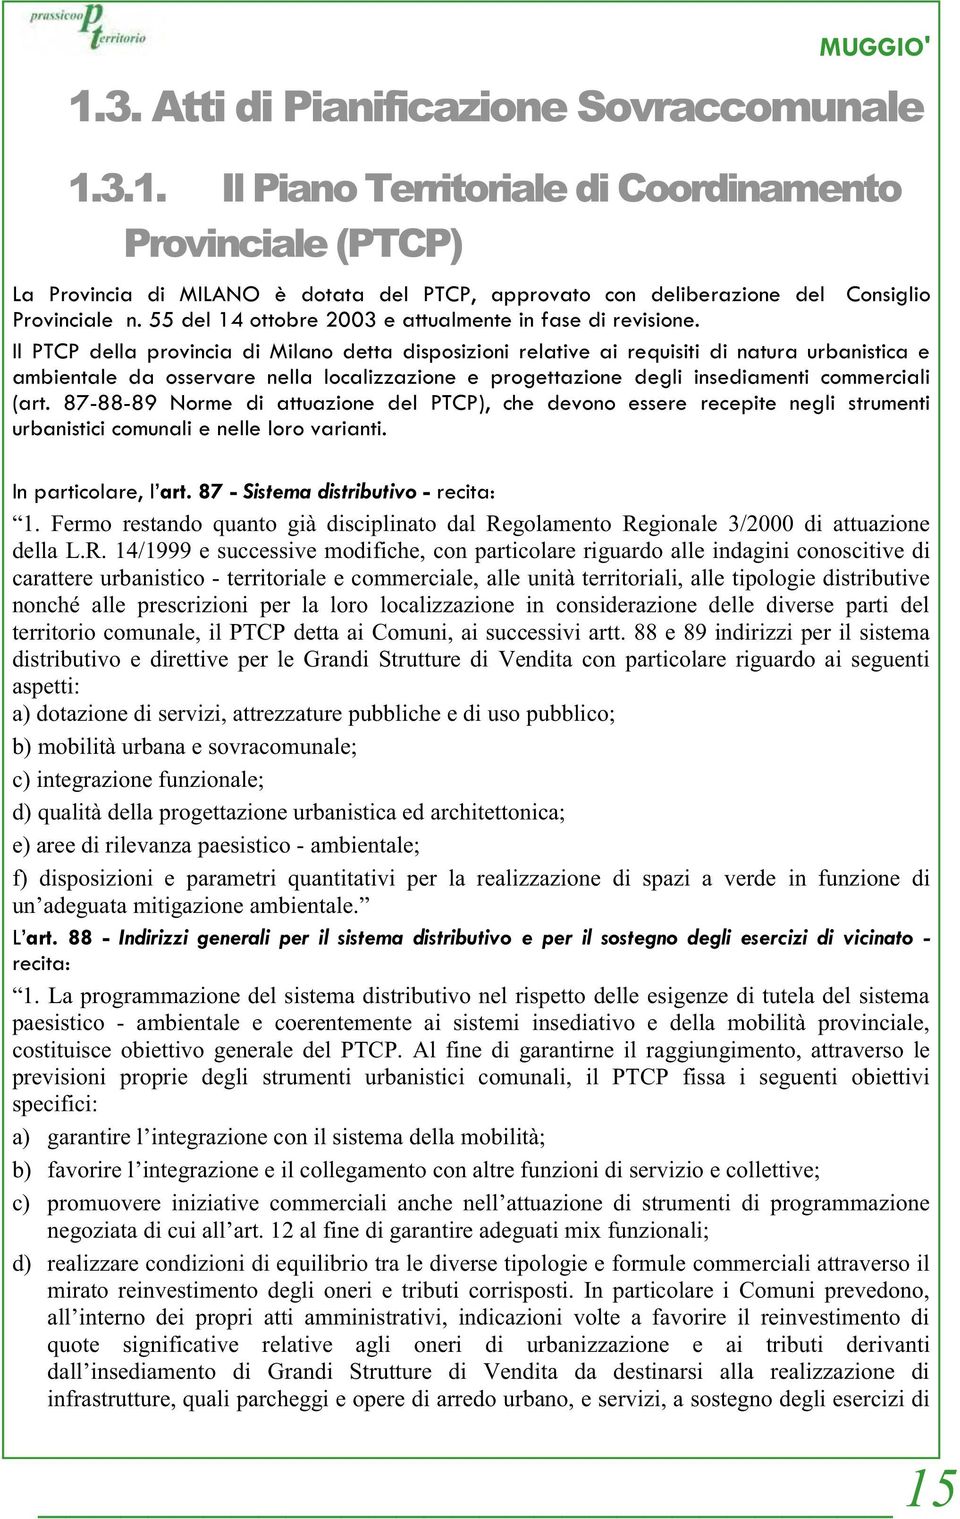 Il PTCP della provincia di Milano detta disposizioni relative ai requisiti di natura urbanistica e ambientale da osservare nella localizzazione e progettazione degli insediamenti commerciali (art.